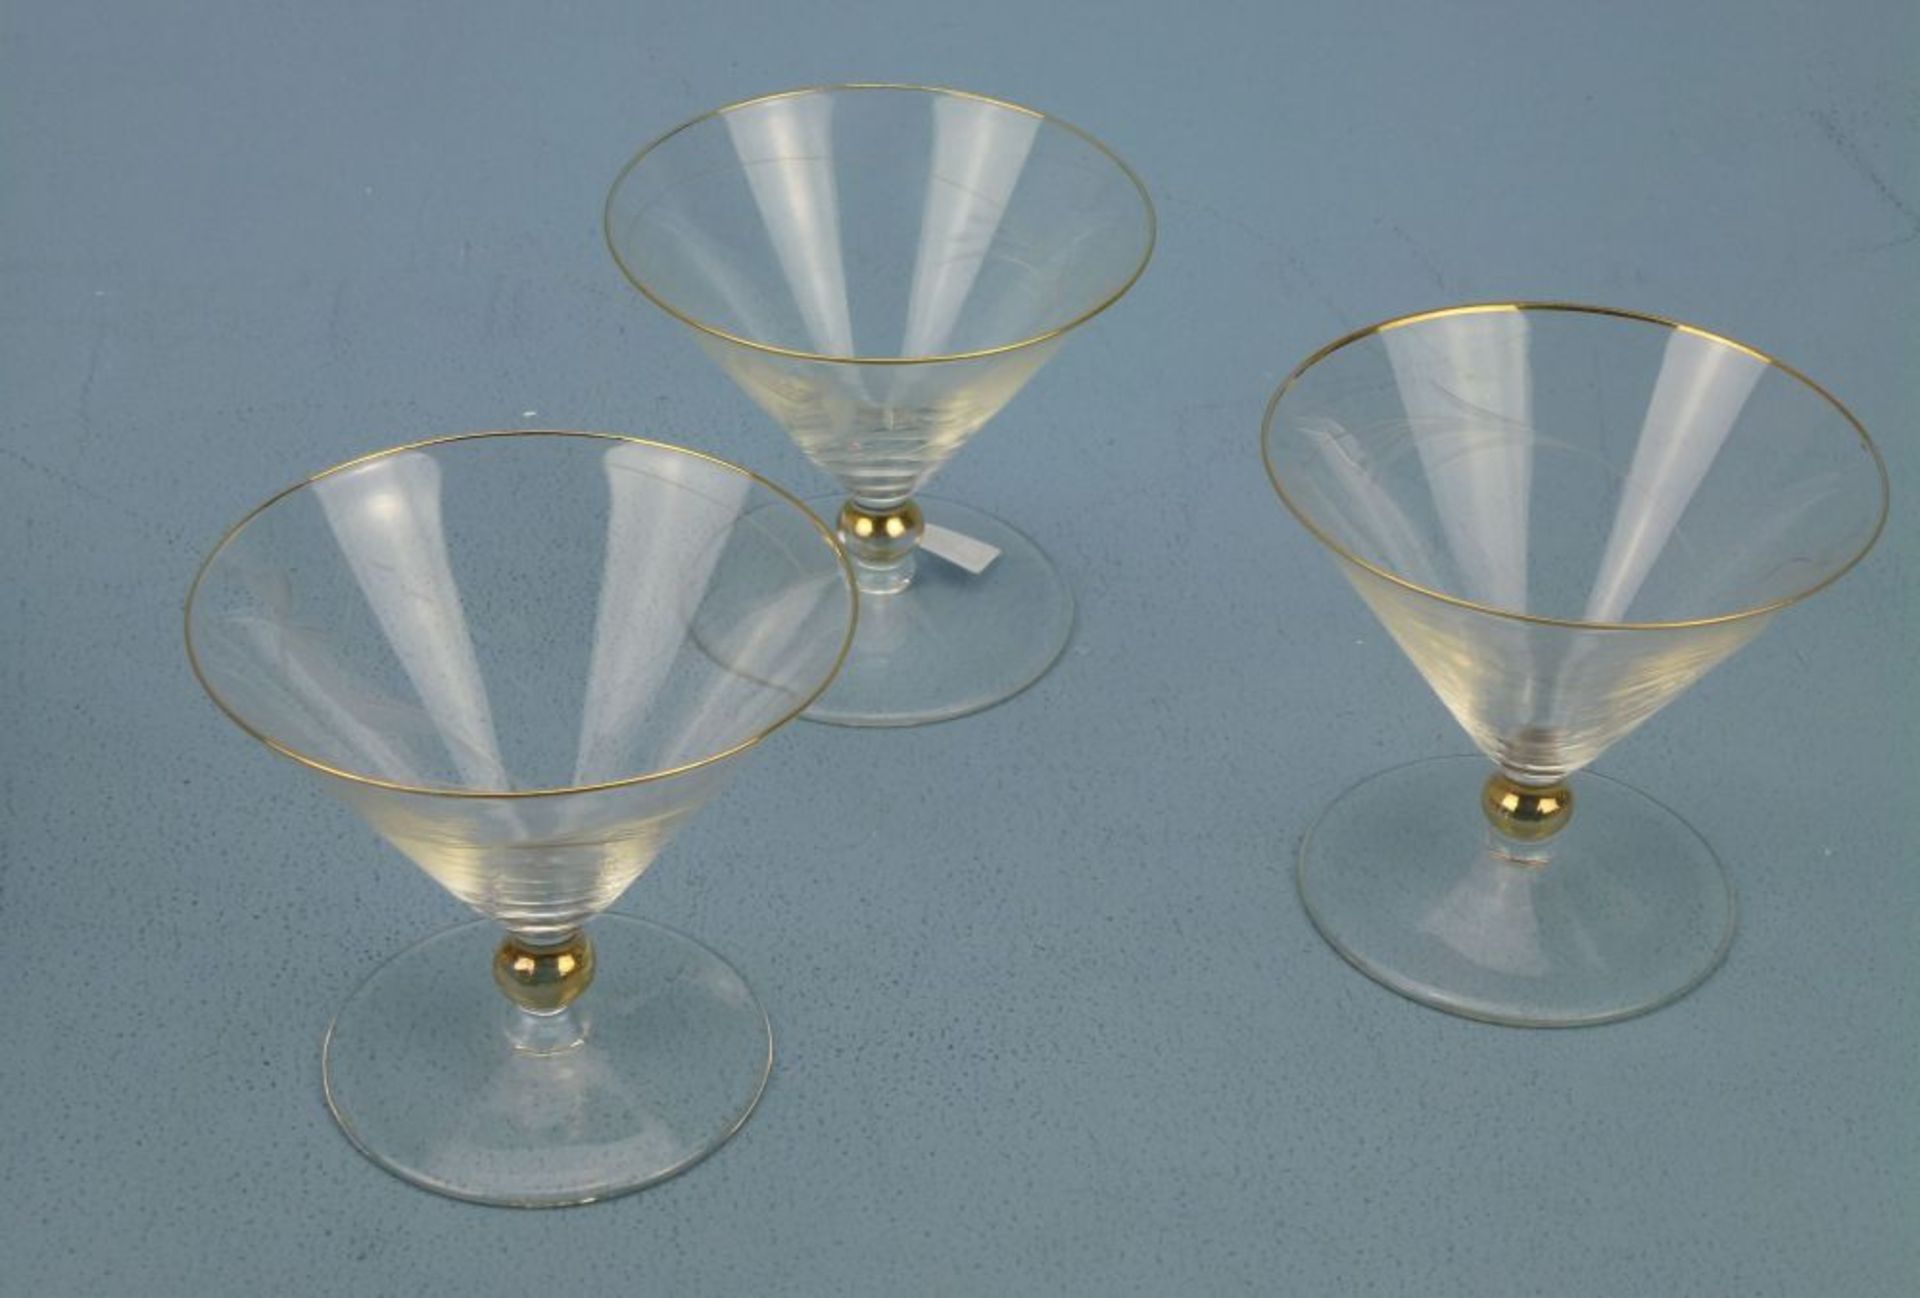 3 SektschalenRichard Süssmuth?, 1900 - '74klares Glas, trichterförmig, Gold-Nodus u. -Rand, Figurine